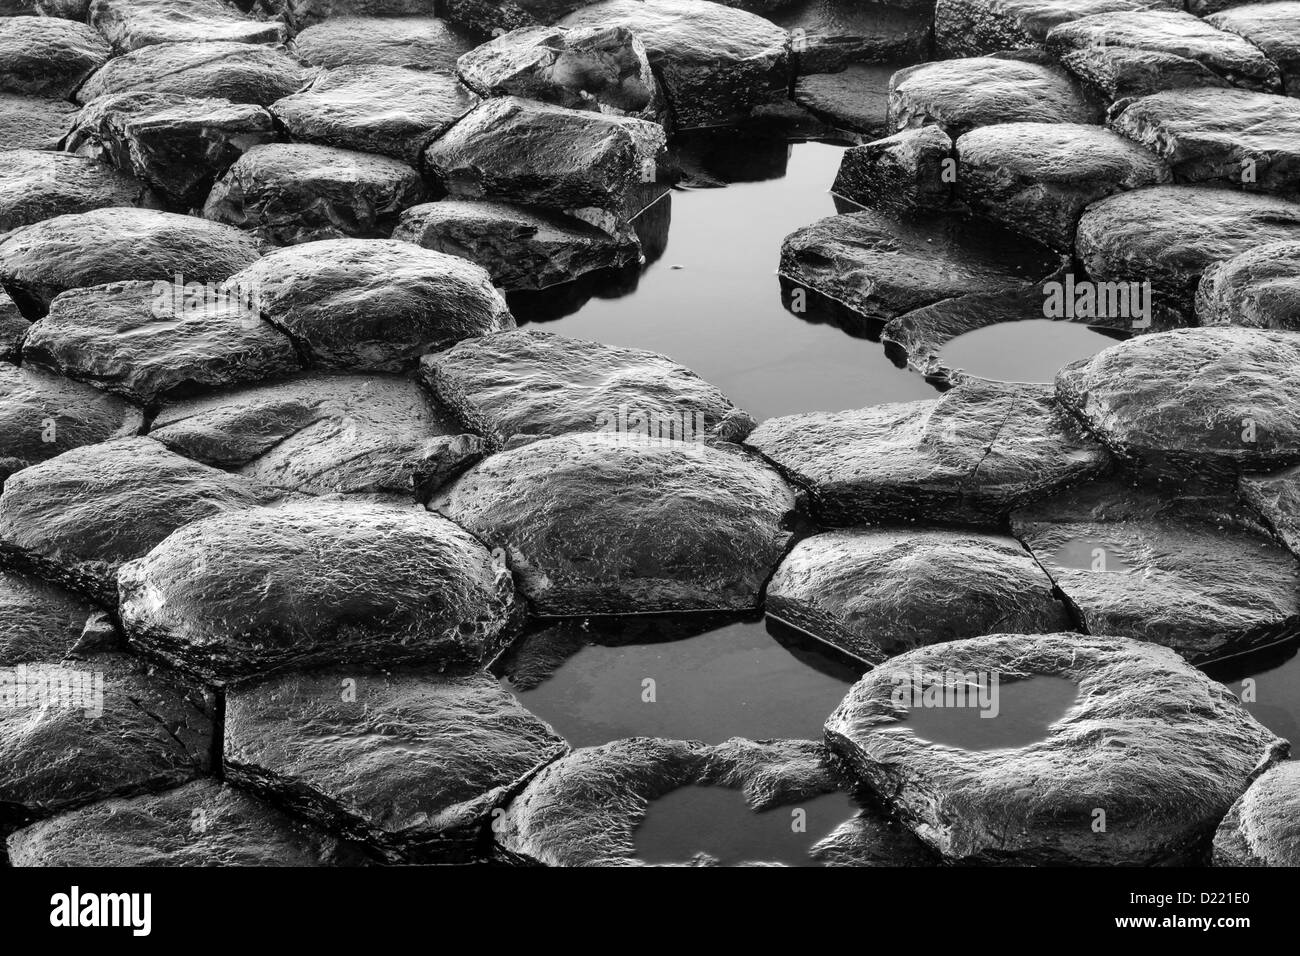 Dettagli in bianco e nero della texture della esagonale rocce basaltiche motivo dal famoso Giant's Causeway, in Irlanda del Nord. Foto Stock